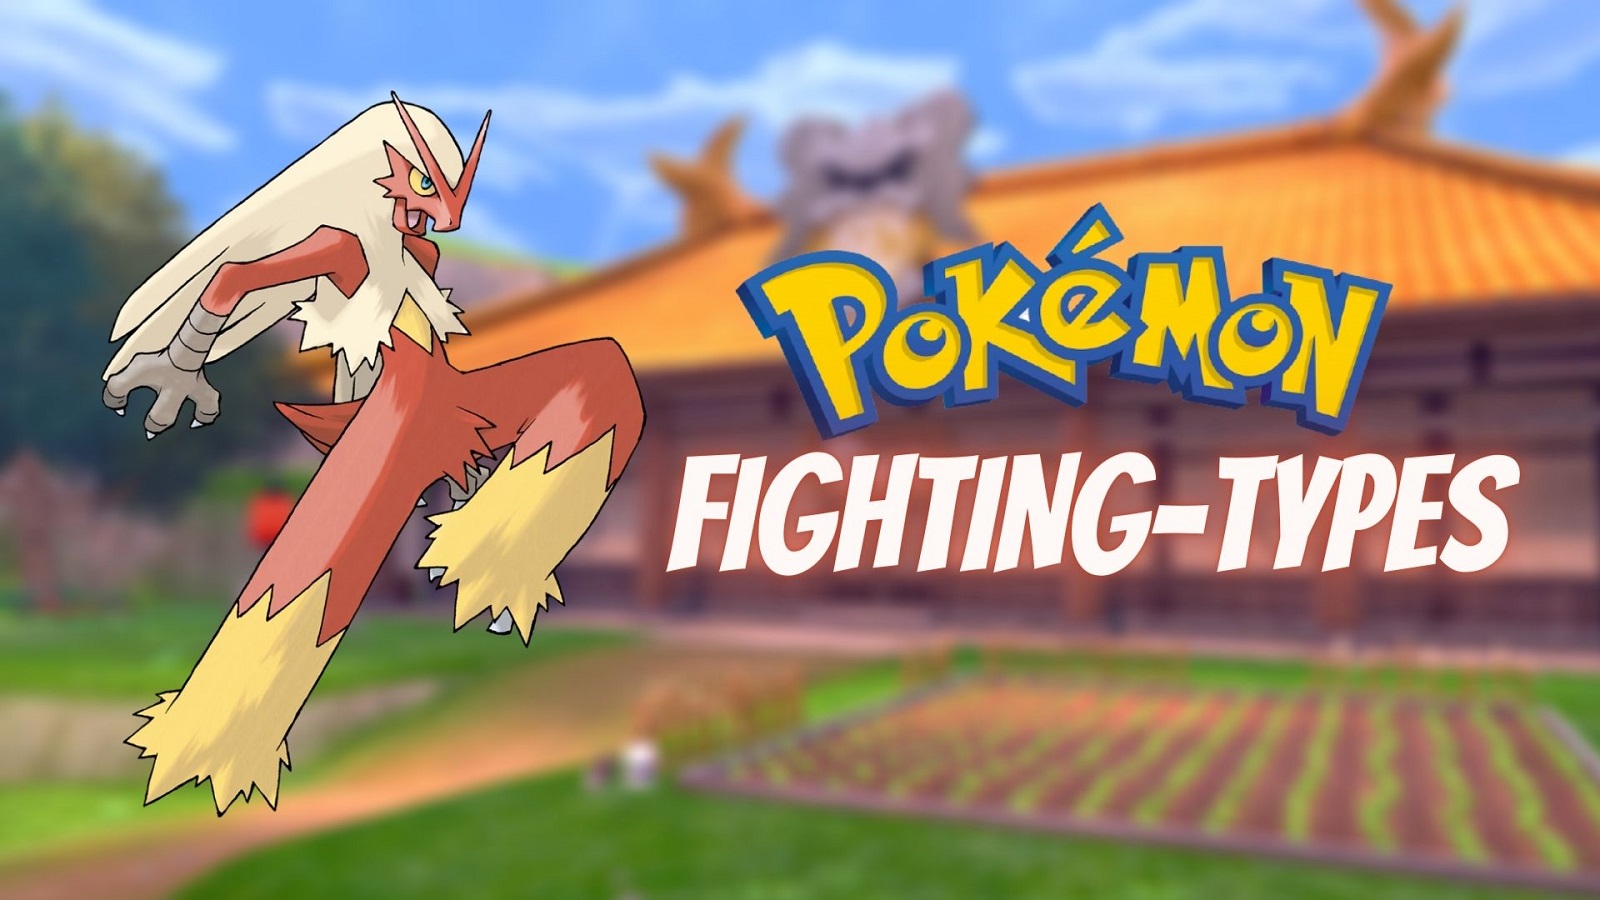 The best fighting type Pokémon in Pokémon Go